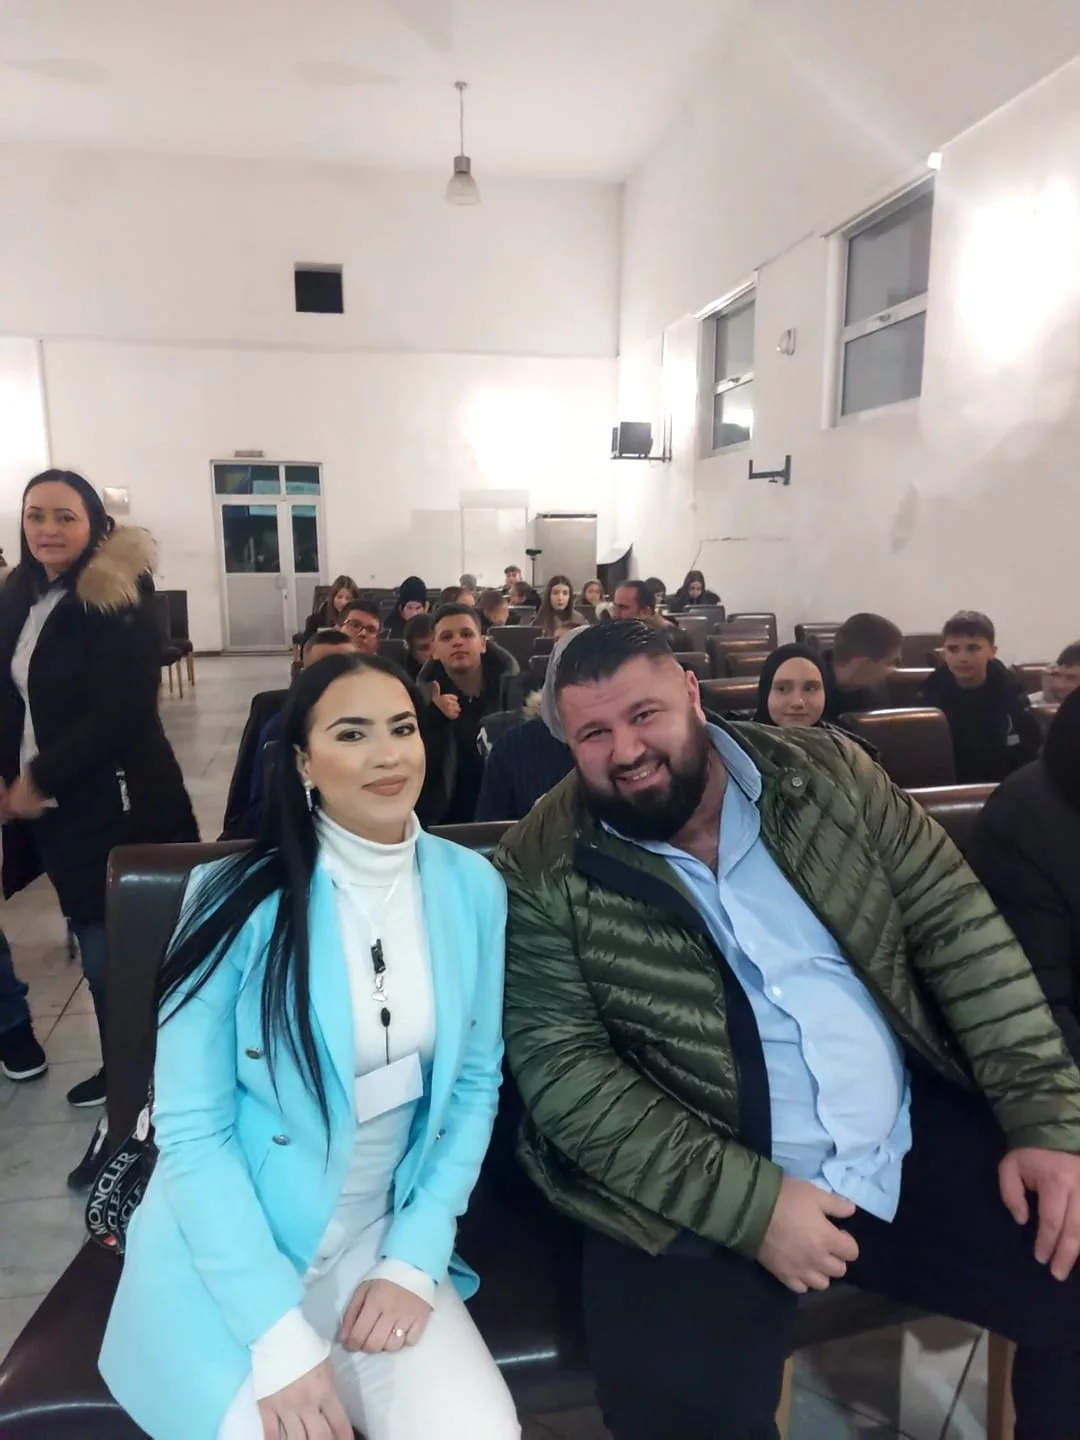 Mladi se okupili u Janji na druženju u organizaciji Udruženja "Sinovi Podrinja", motivacioni govor održao Nedžad Ambešković